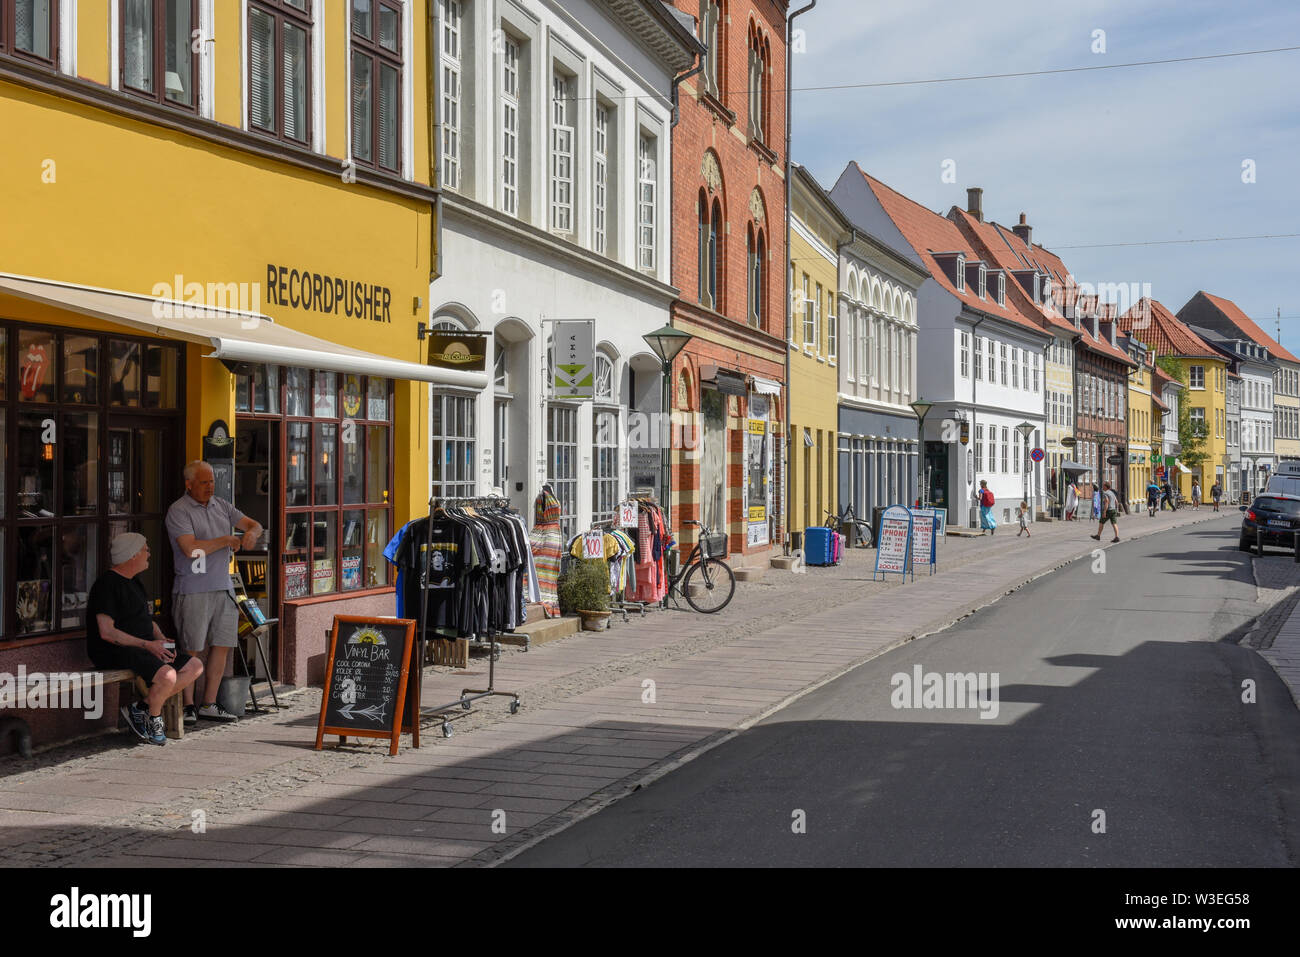 Odense, Danemark - 24 juin 2019 : dans les vieilles maisons d'Odense au Danemark Banque D'Images